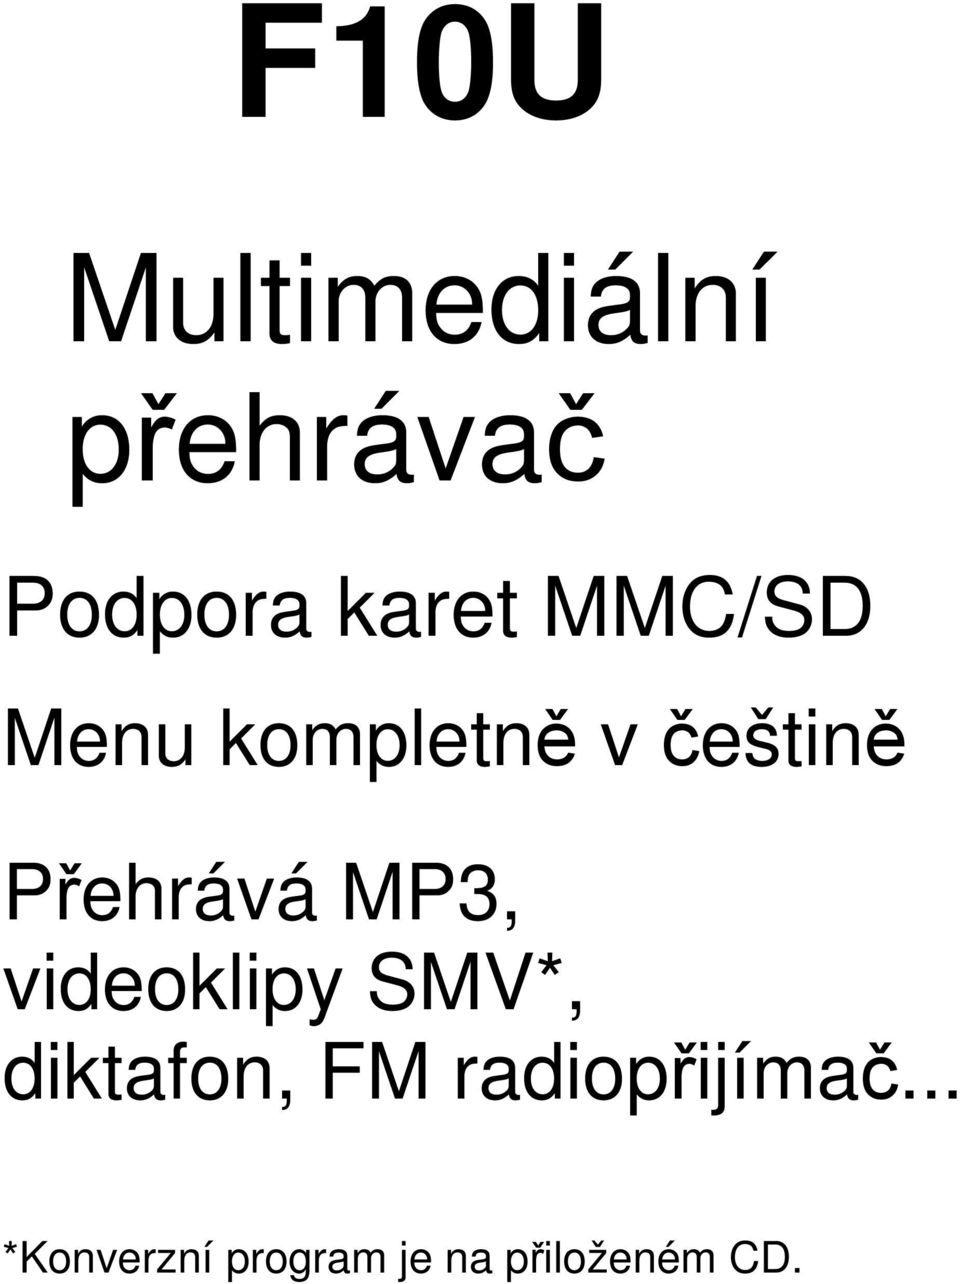 MP3, videoklipy SMV*, diktafon, FM